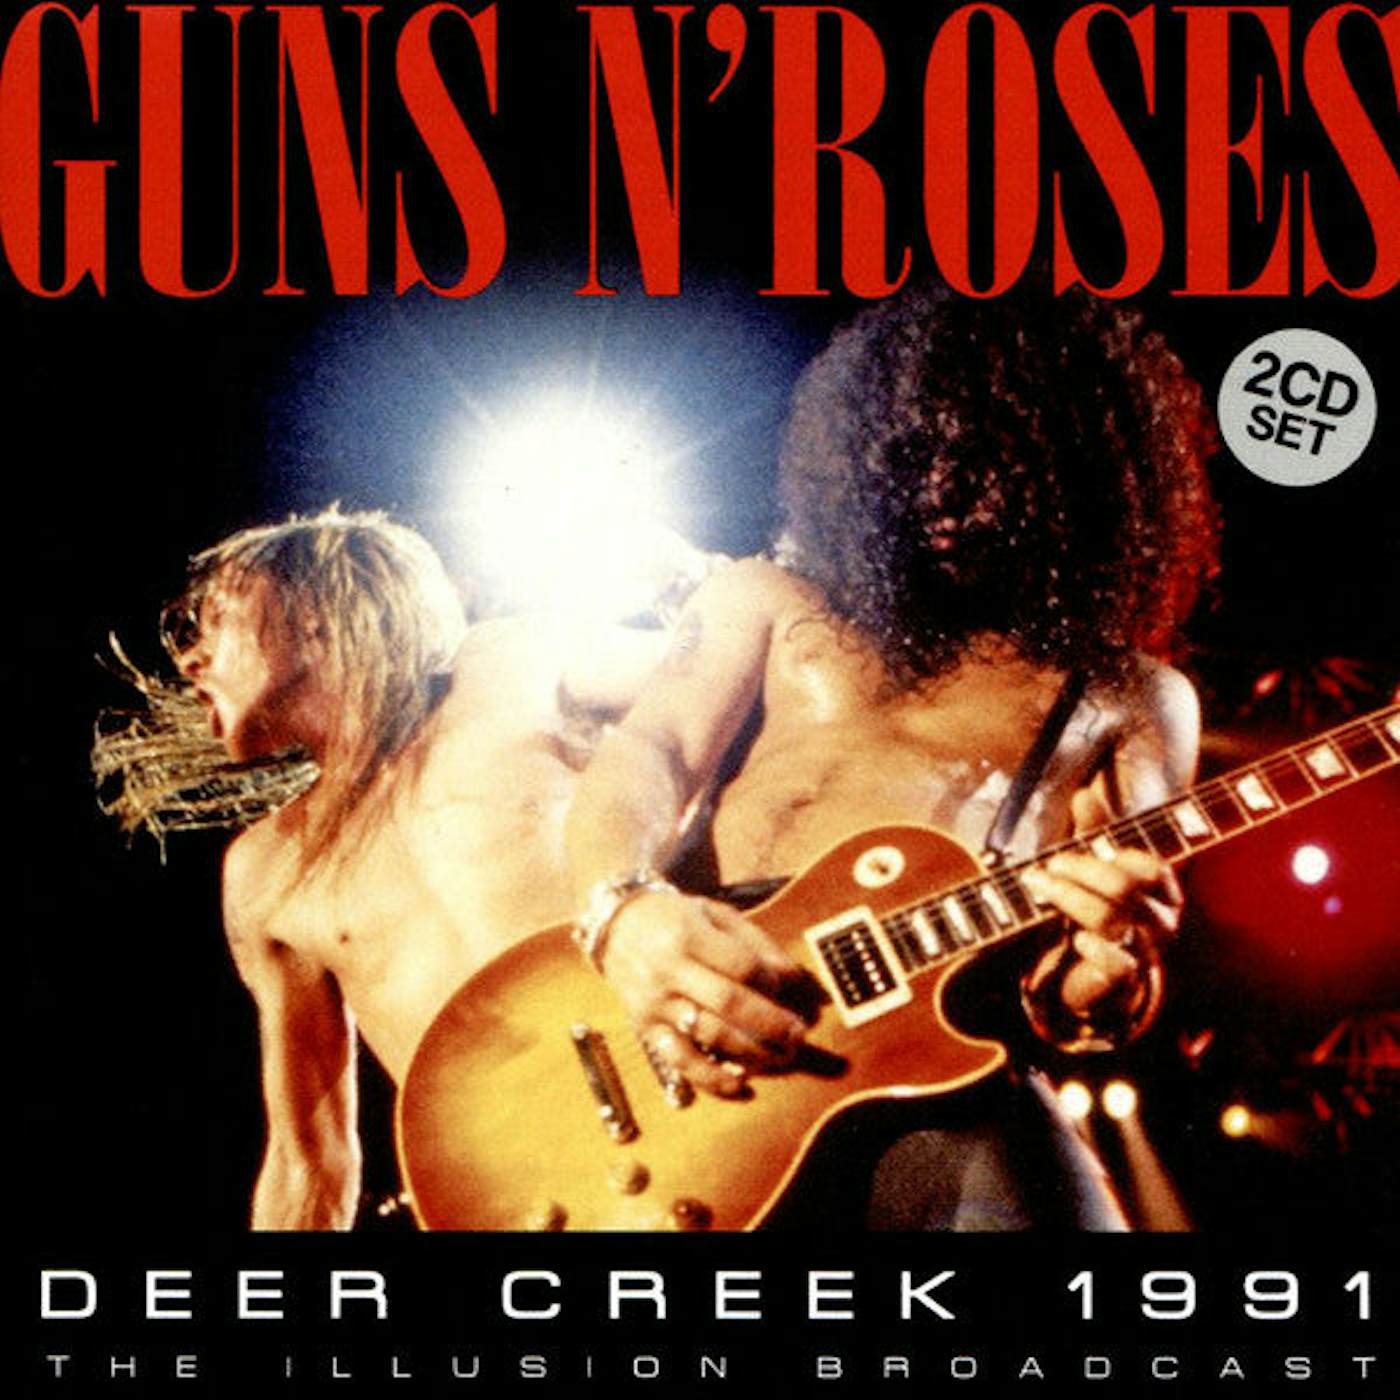 Guns N' Roses LP Vinyl Record - Deer Creek 19 91